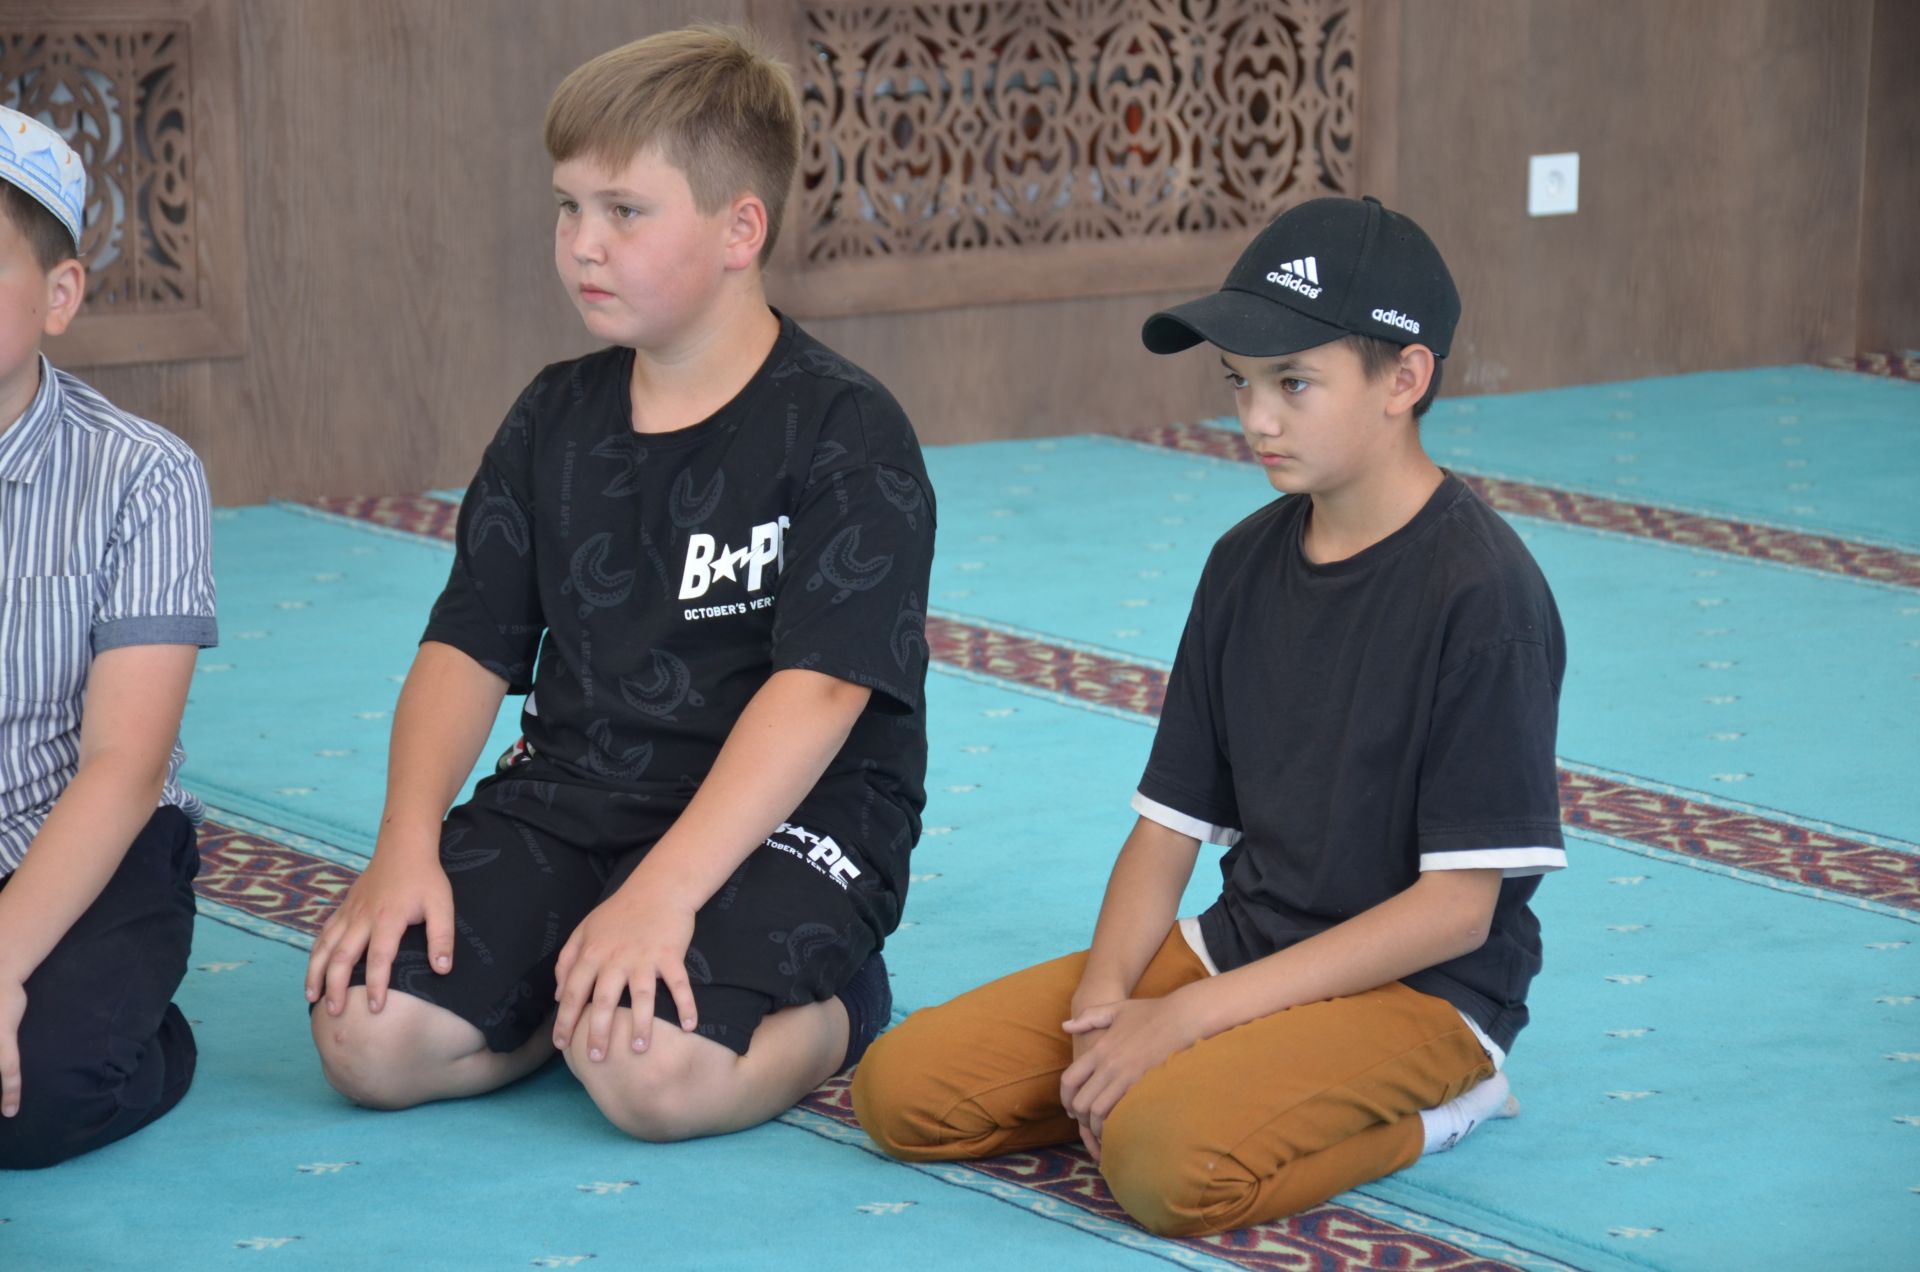 Детский мусульманский Сабантуй при центральной соборной мечети